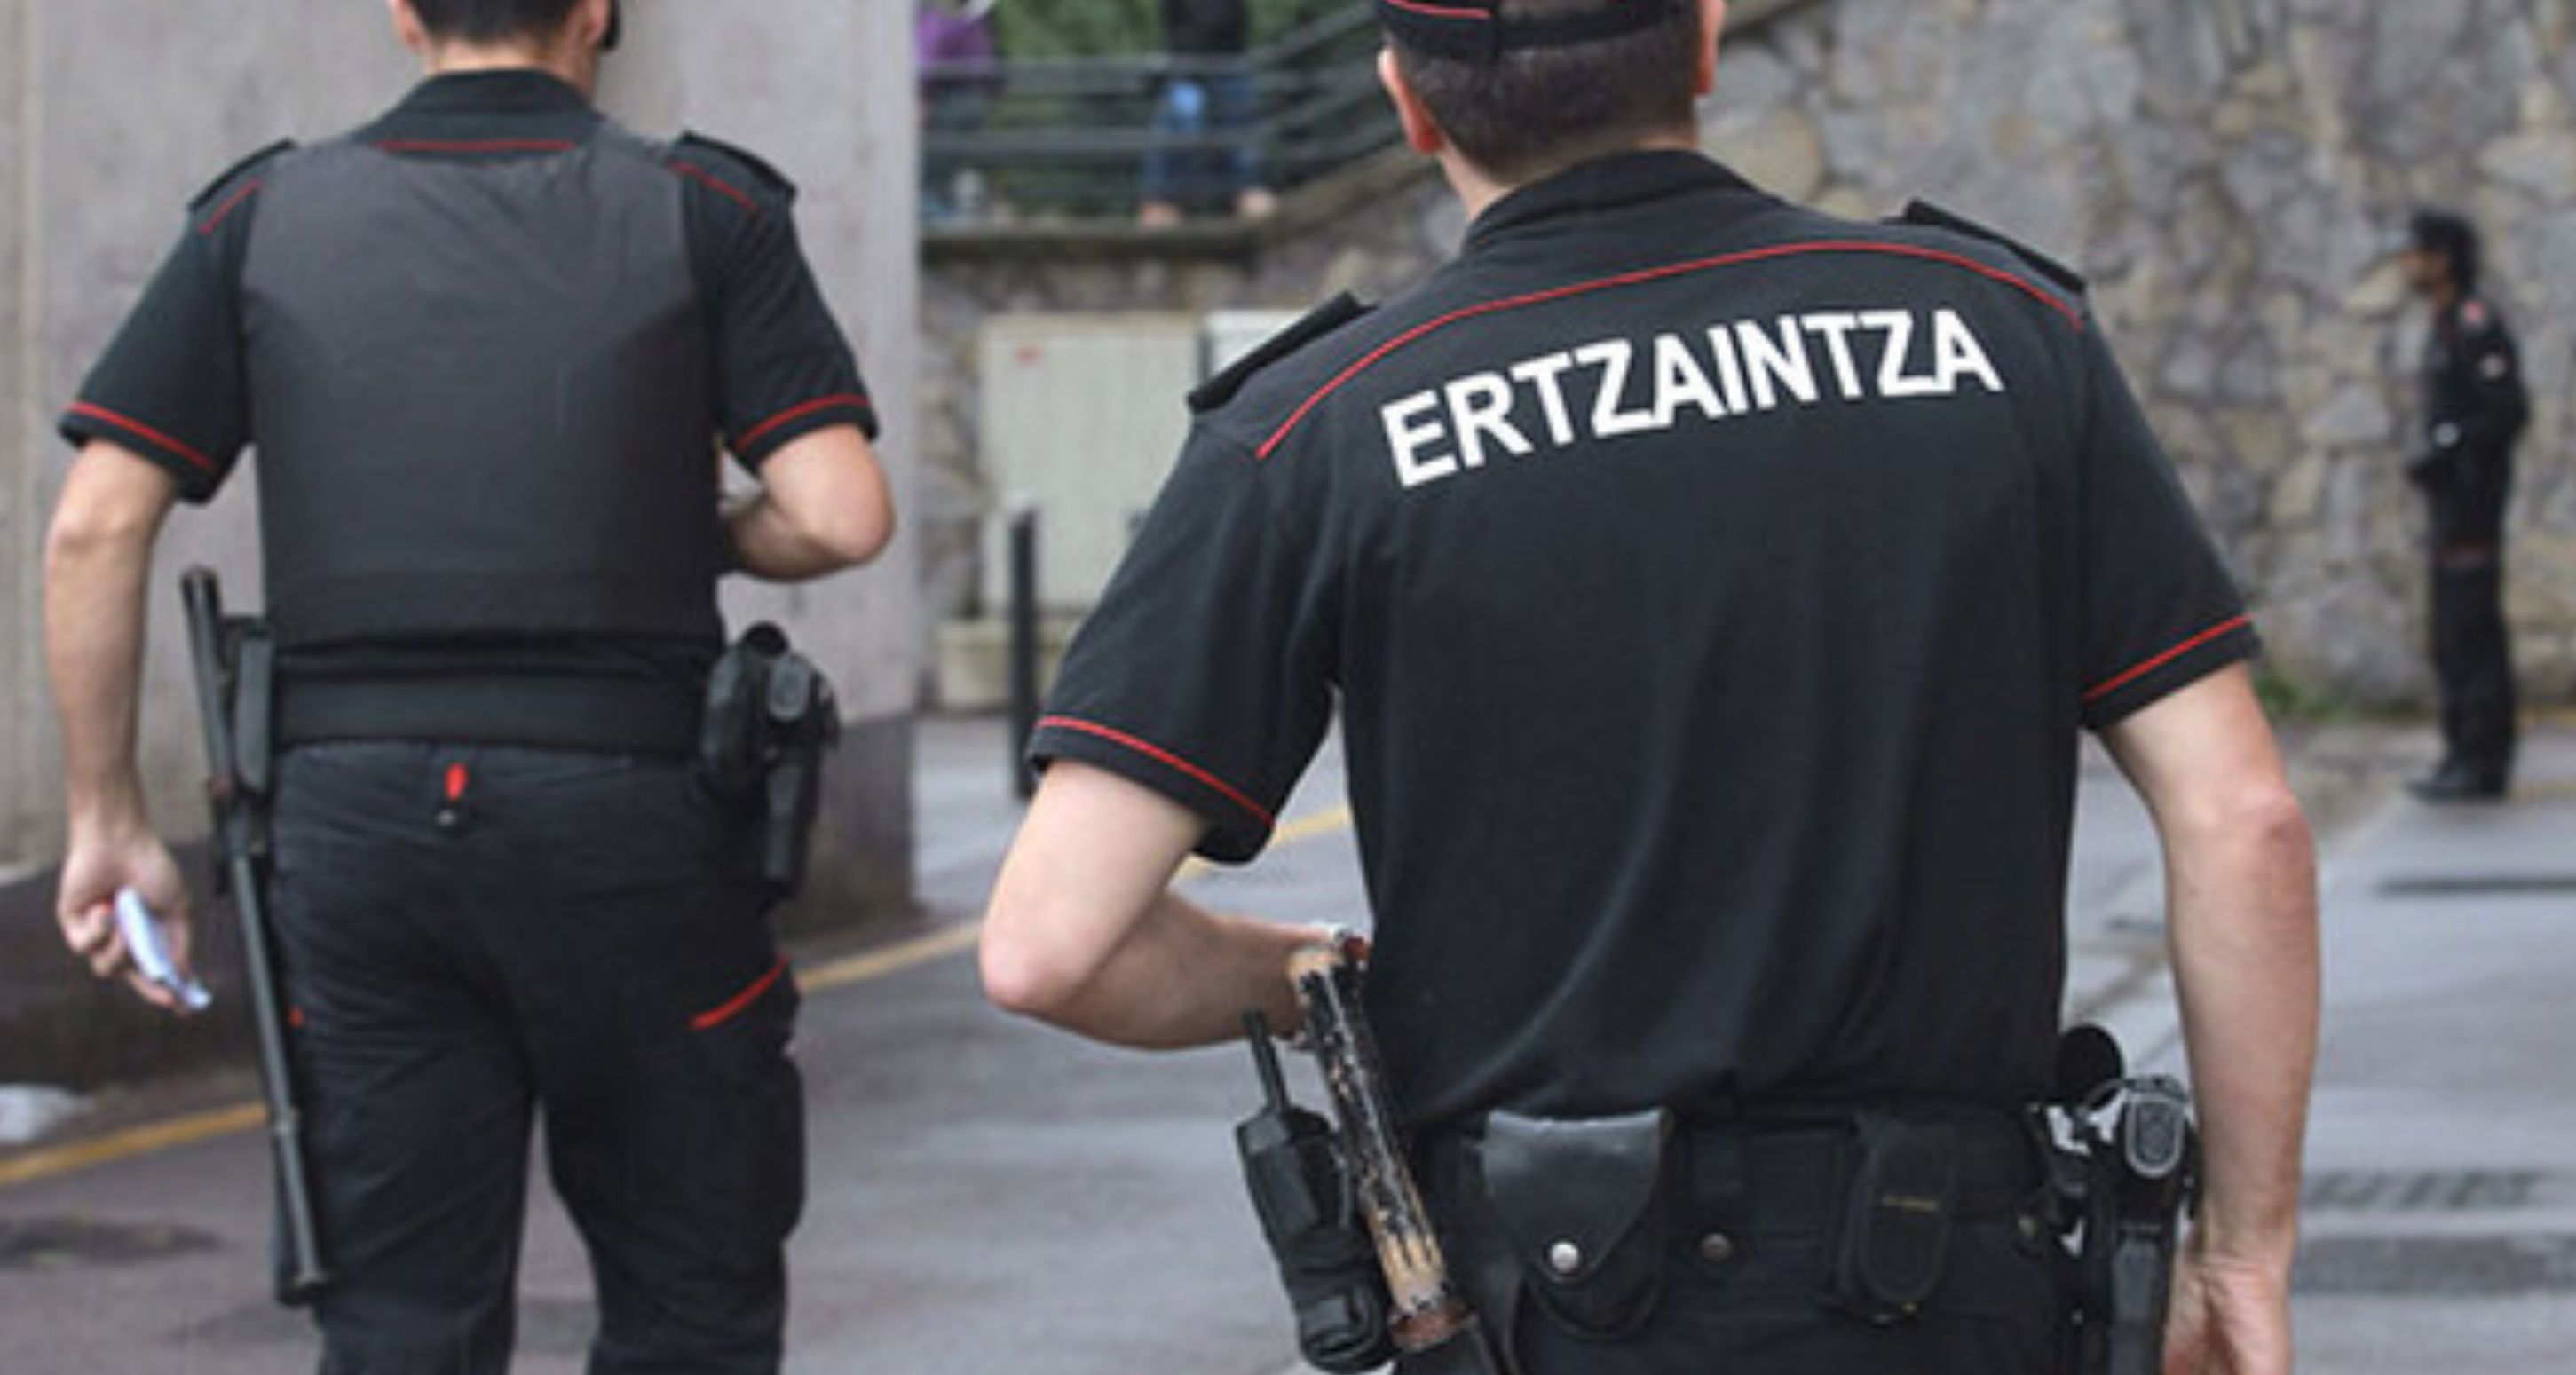 La Ertzaintza investiga a un agente denunciado por participar en las protestas contra Sánchez